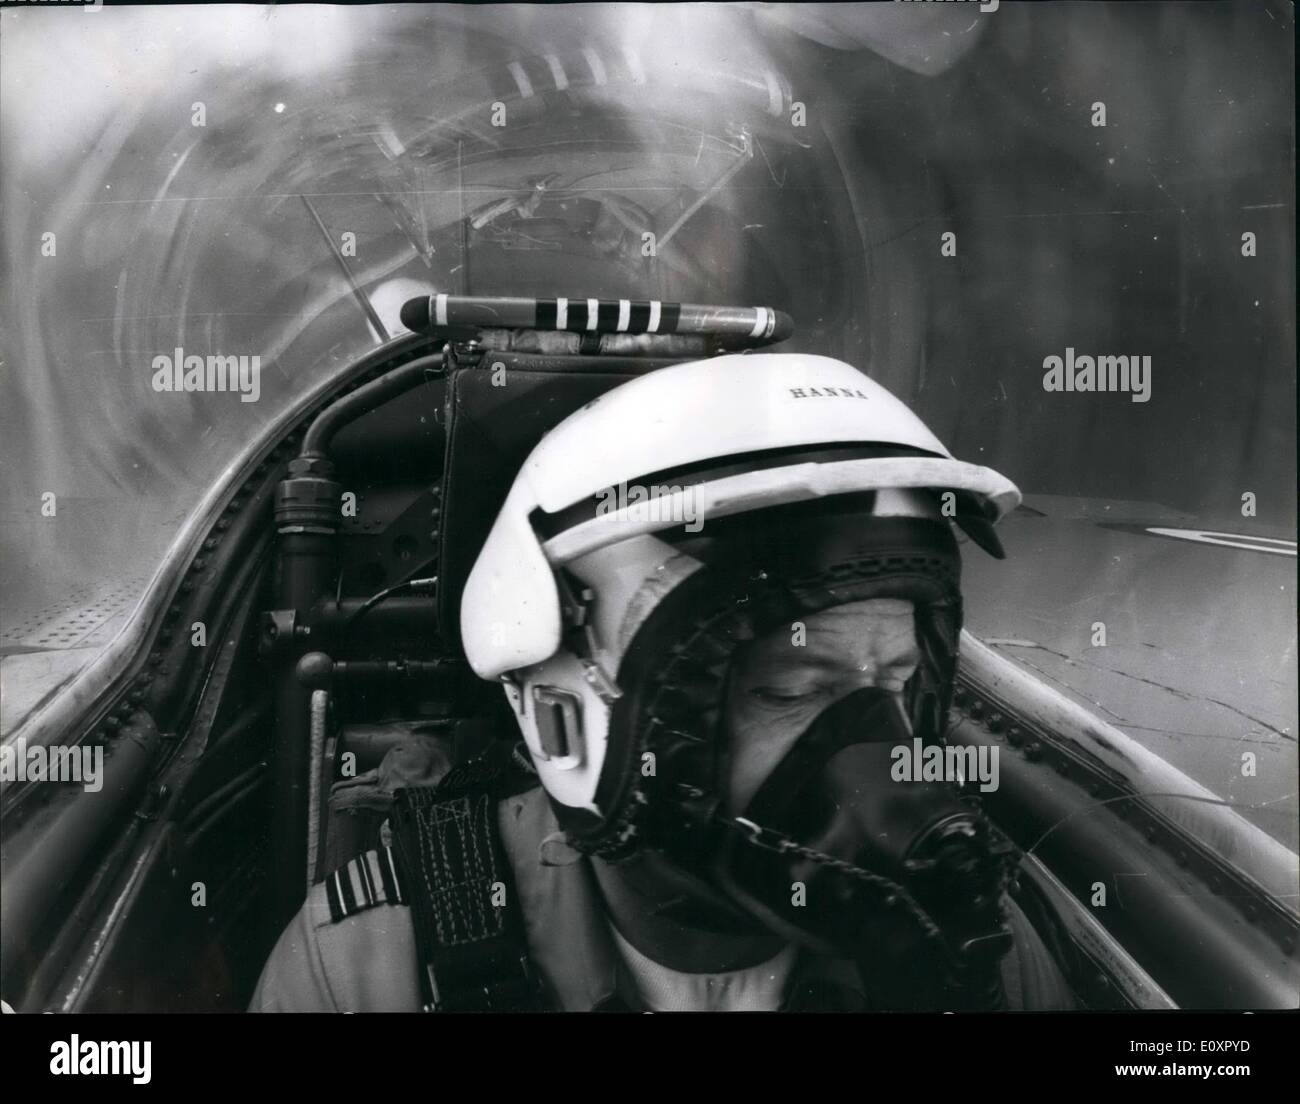 Agosto 08, 1967 - Il Picturre che proprio non sa che il senso di: mettere una poltrona sulla sua schiena e sedersi in esso, rivolta verso il soffitto. Arrivare a qualcuno di span è intorno ad almeno un giro di un secondo. Questo è qualcosa di simile all'esperienza l'uomo nella foto sta attraversando. Squadron Leader Ray hanna, leader delle frecce rosse, la R.A.F.'s aerobatic team, è il suo rotolamento HAWKER SIDDELEY moscerino getto in una routine ''Twinkle''. Per ottenere la sua immagine, il fotografo seduto nel sedile anteriore, normalmente occupata dal pilota. Egli ha detto: ''Come siamo saliti sembrava come se dieci uomini erano mi tiro indietro Foto Stock